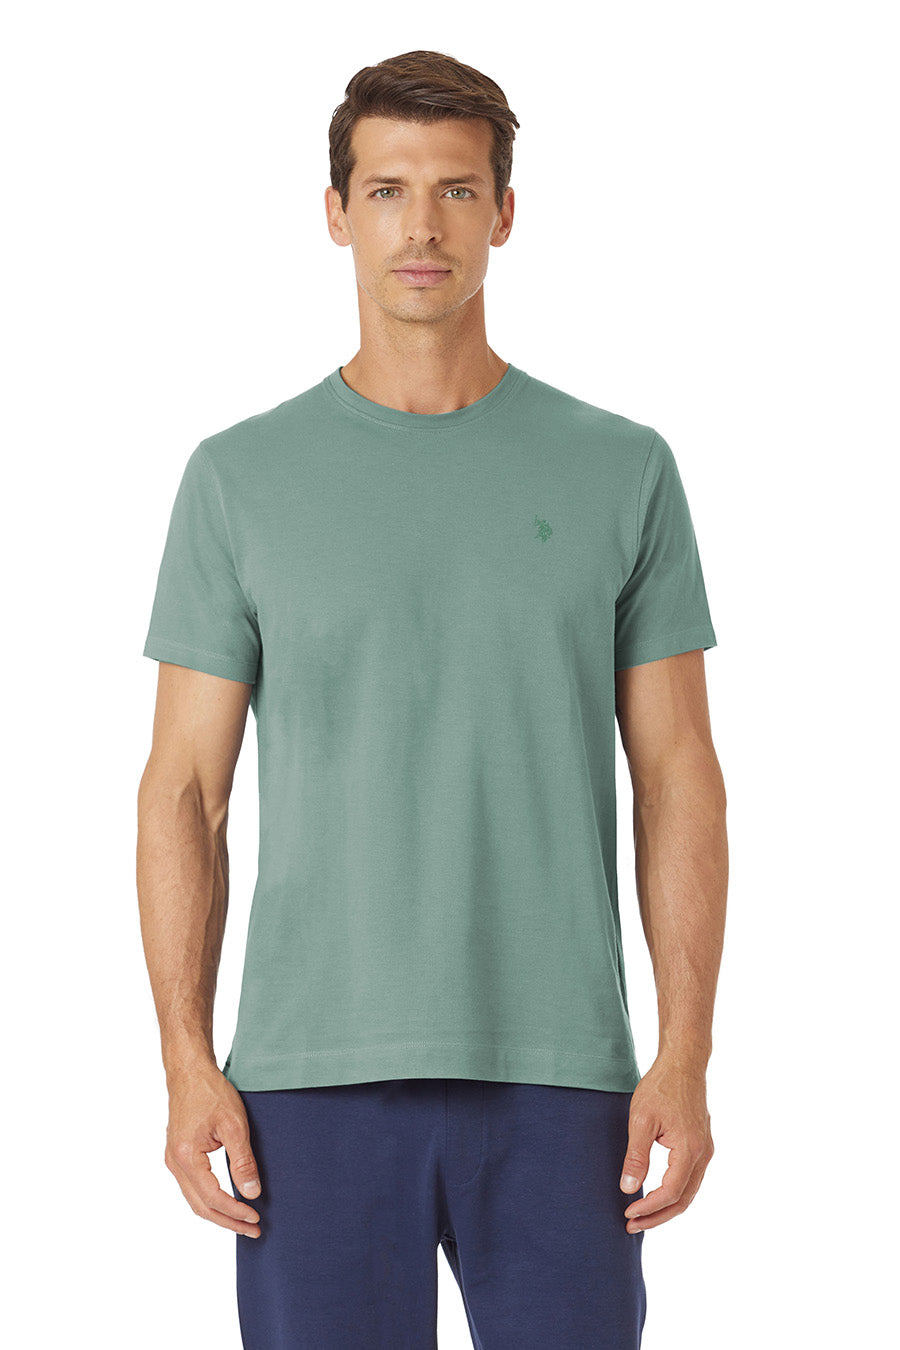 T-shirt a maniche corte in cotone supima premium quality con logo